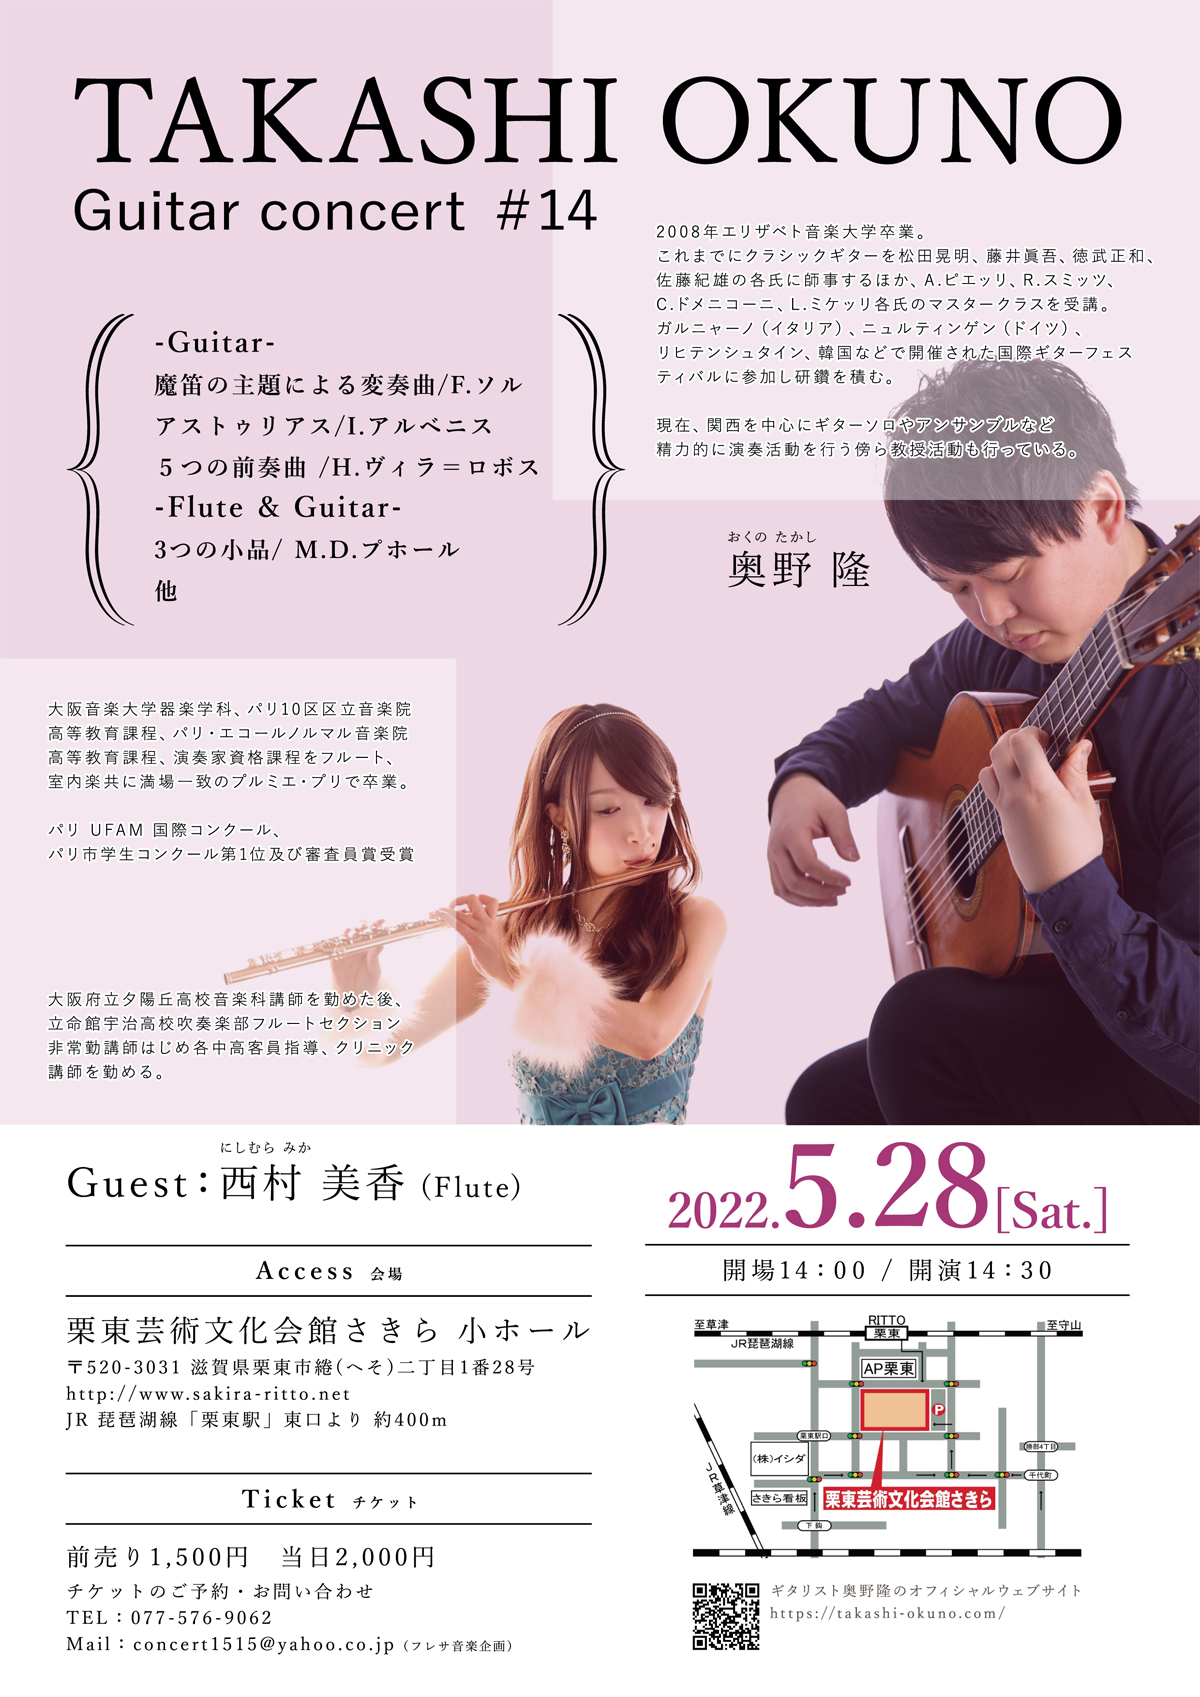 奥野隆コンサート情報 TAKASHI OKUNO Guitar concert #14